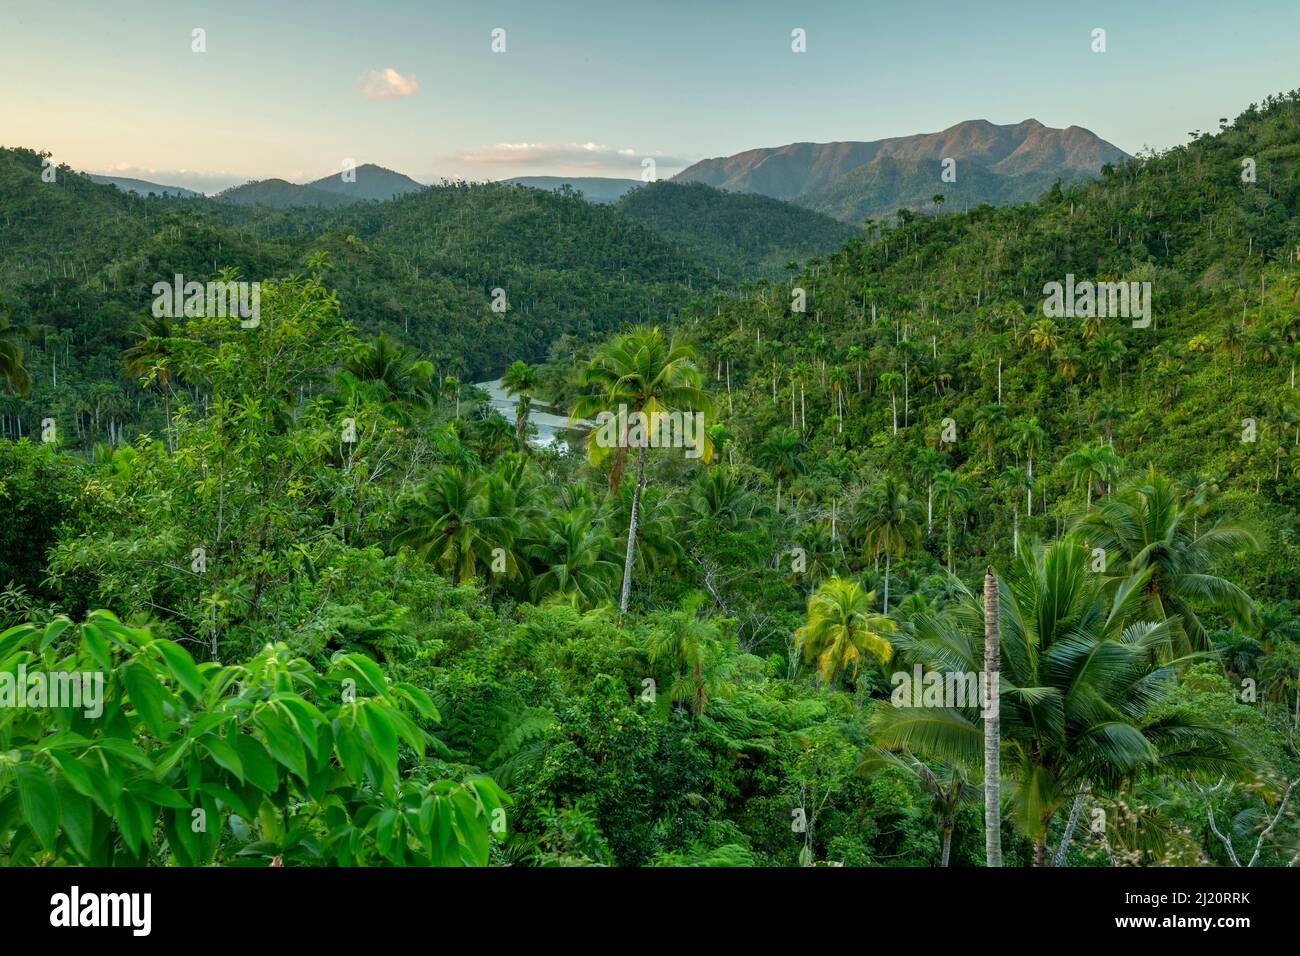 Rainforest vegetation in Chuchillas del Toa Biosphere Reserve near Quibijan, Cuba. March 2019. Stock Photo